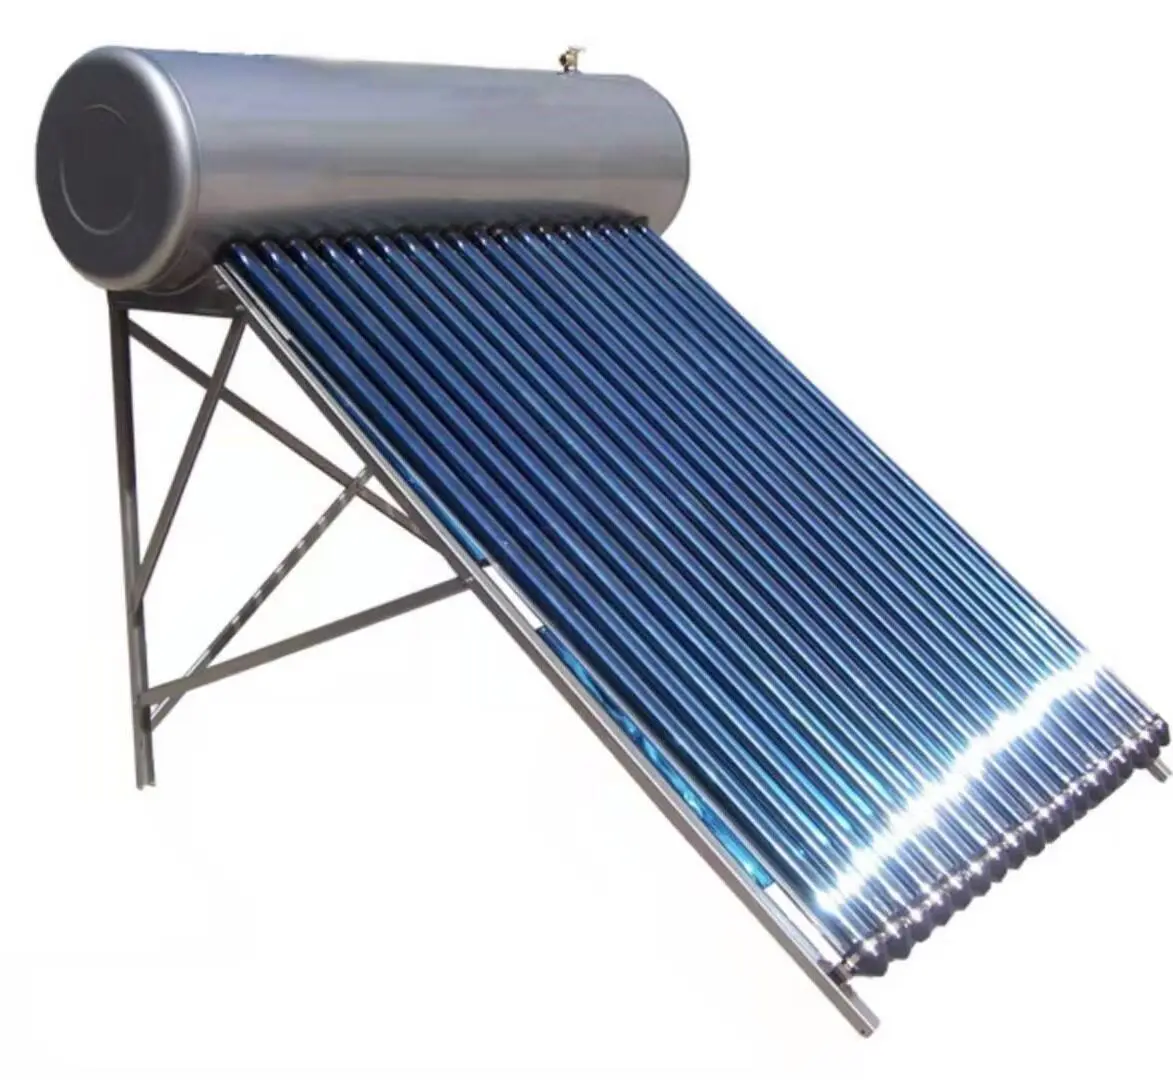 solar water heaters